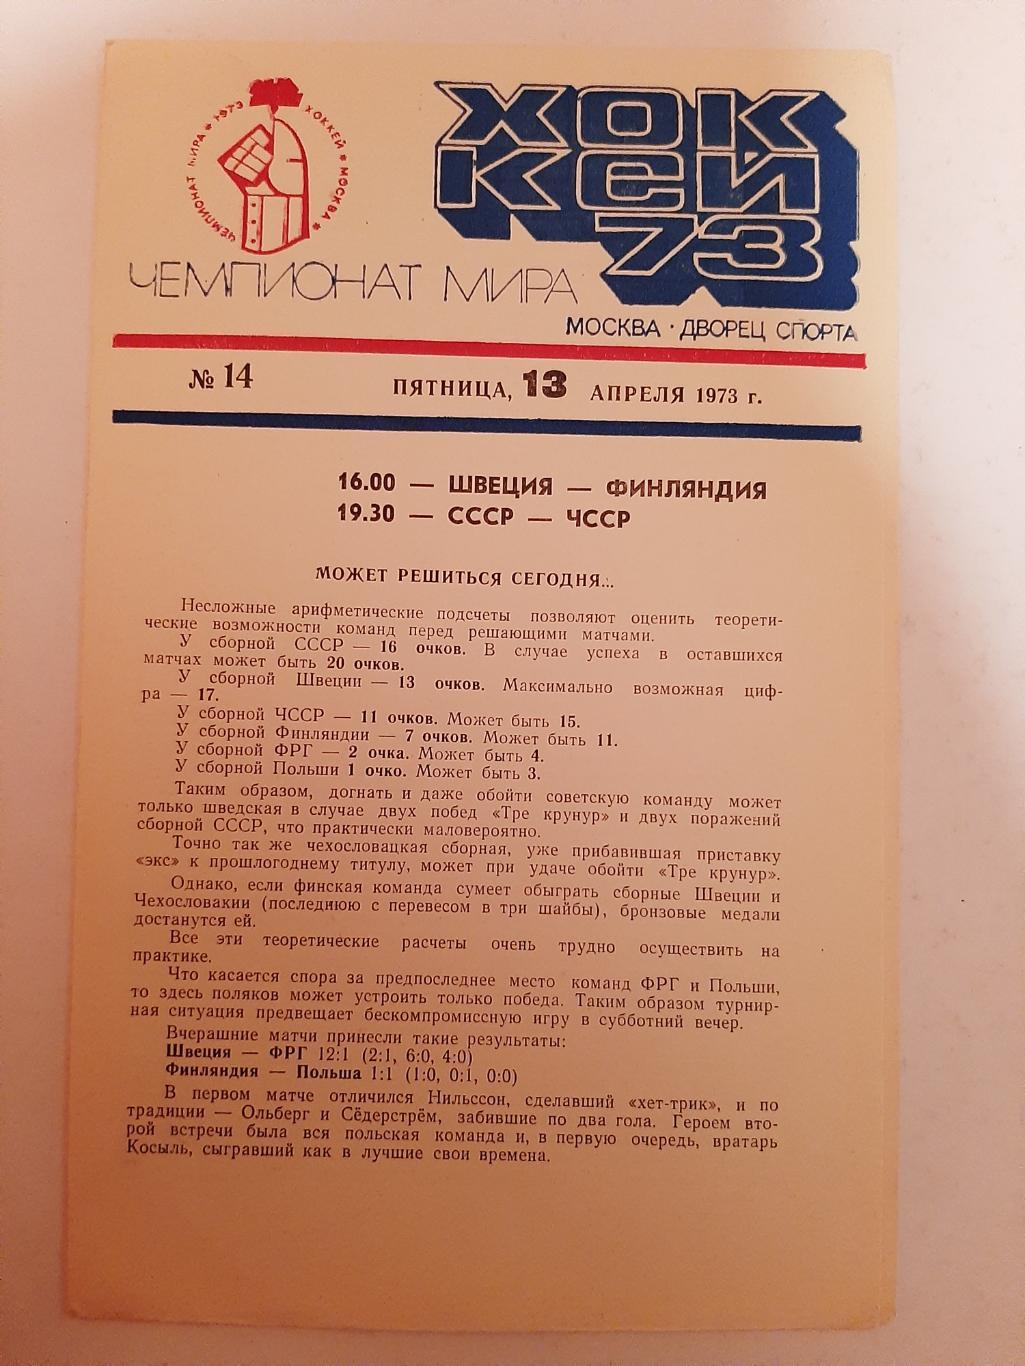 Швеция - Финляндия; СССР - ЧССР 13.04.1973